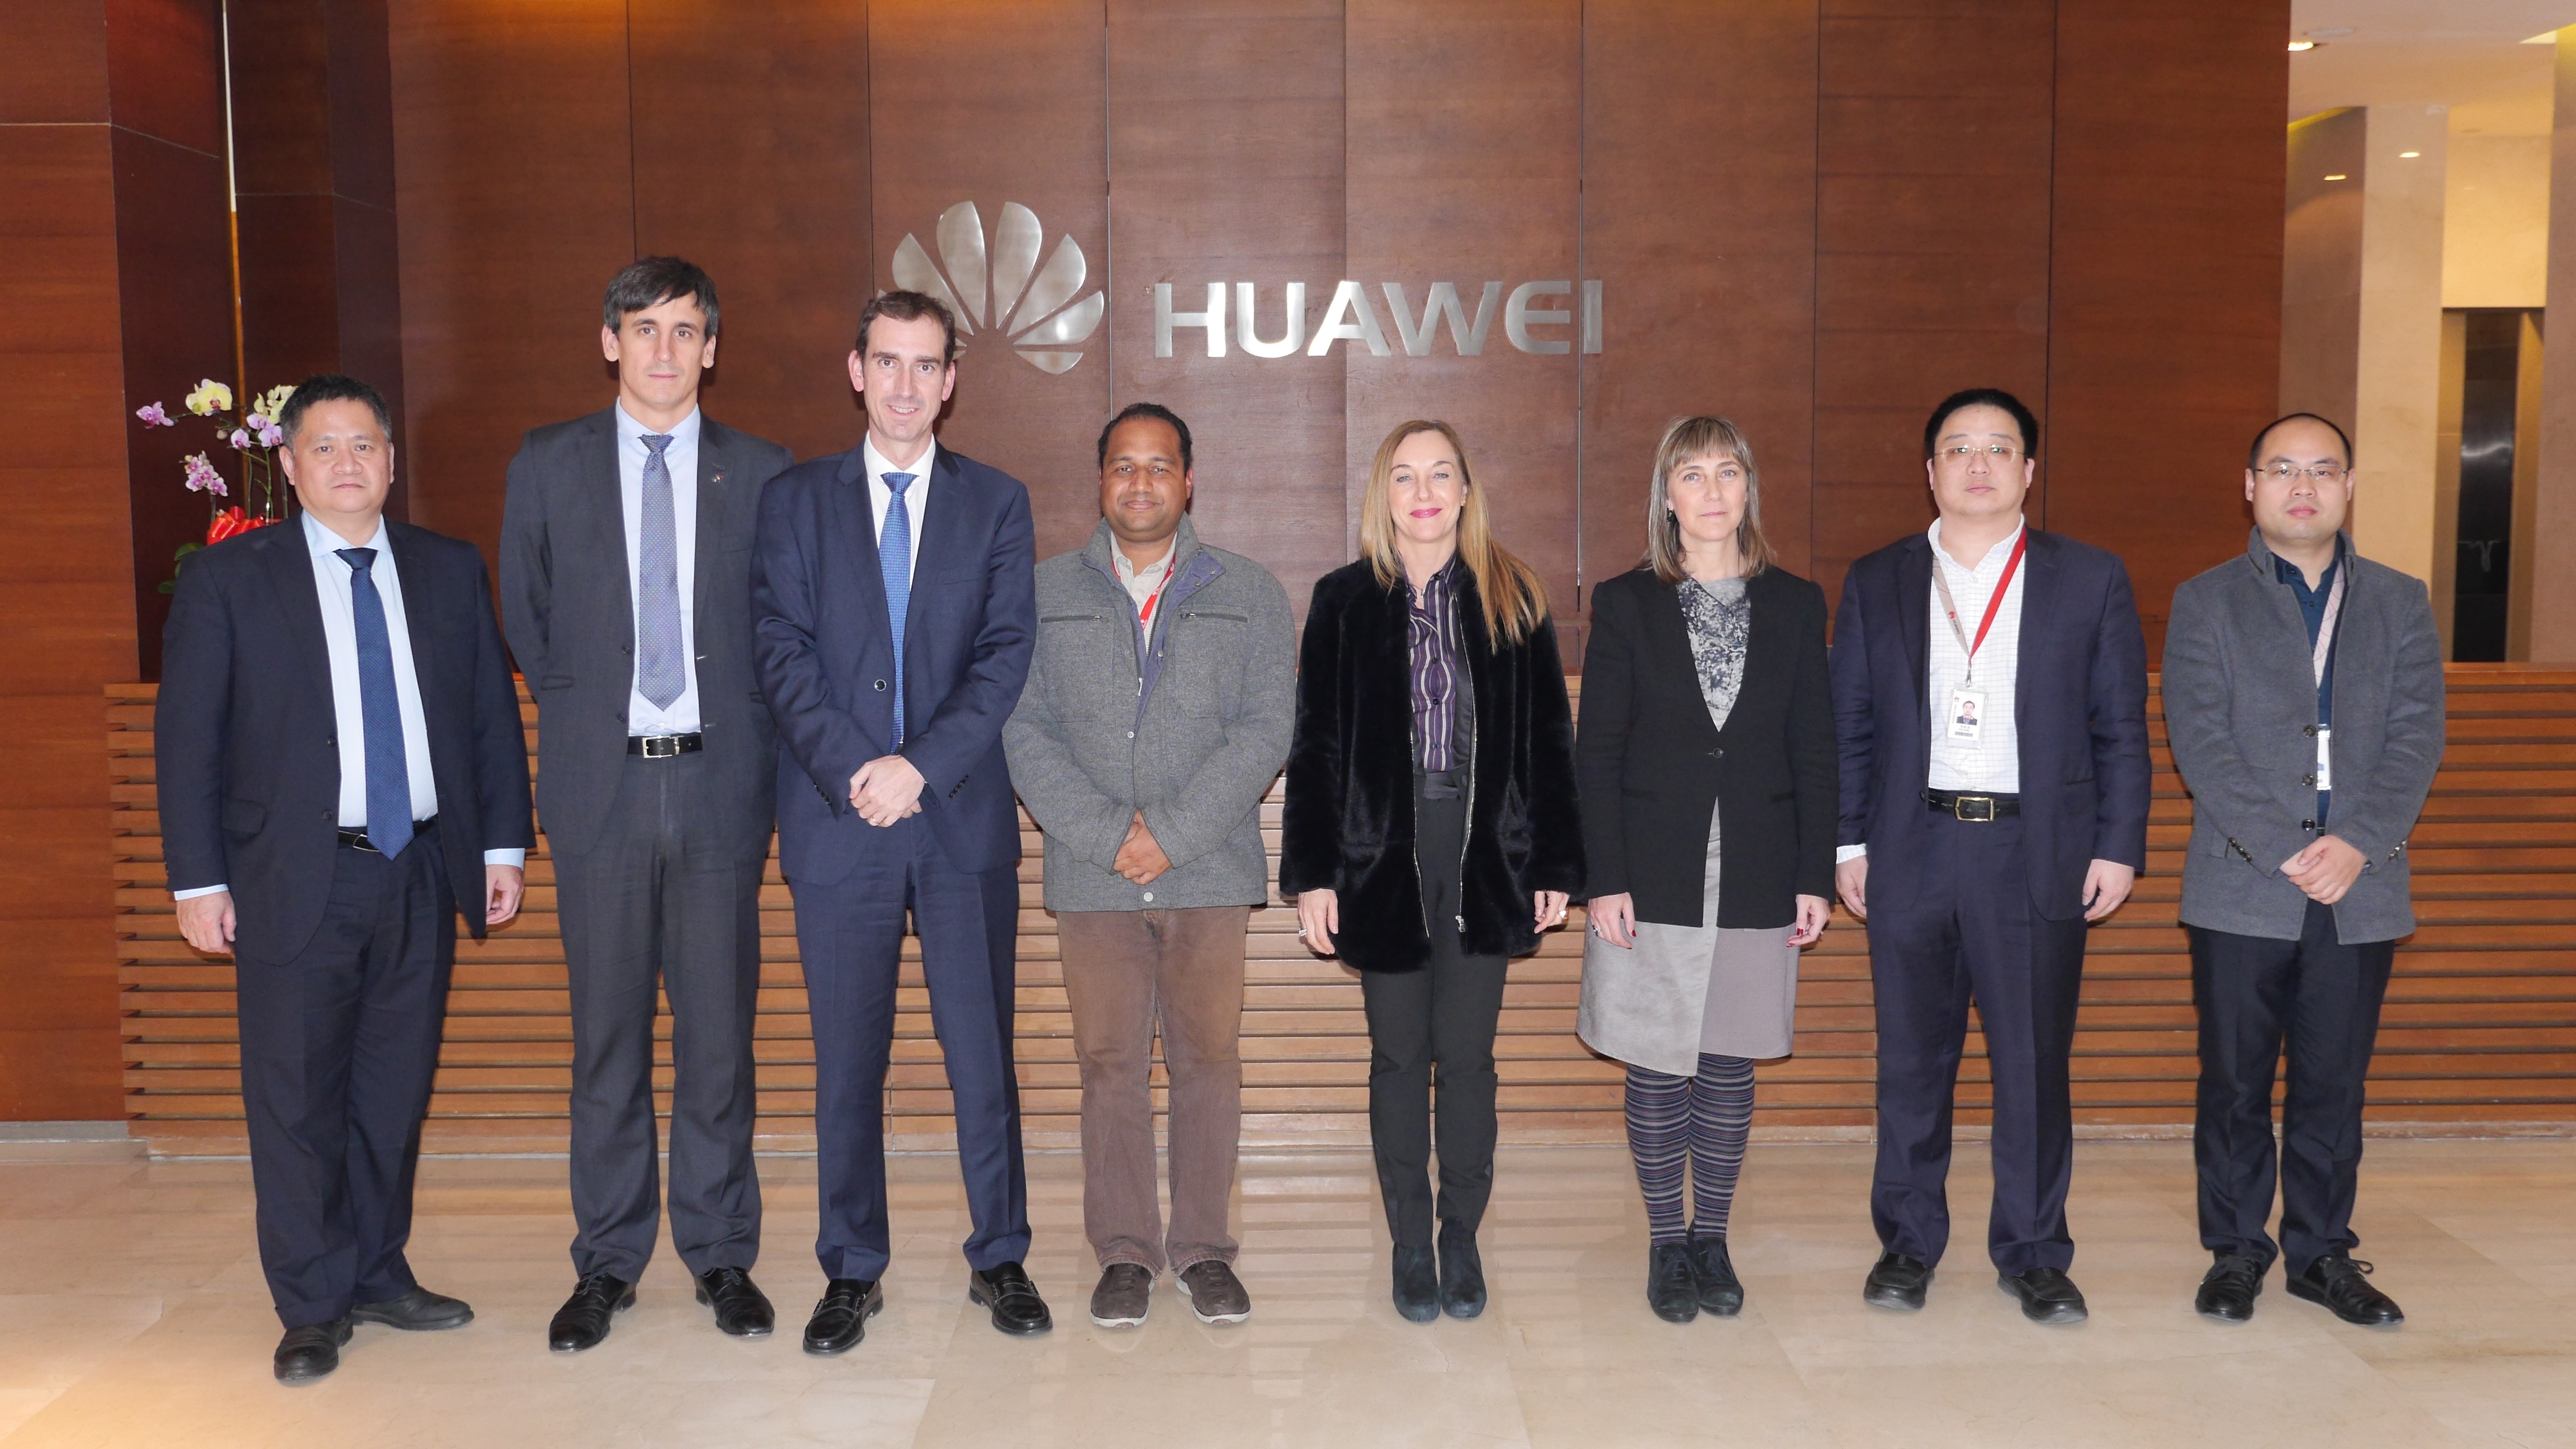 visita Huawei en China